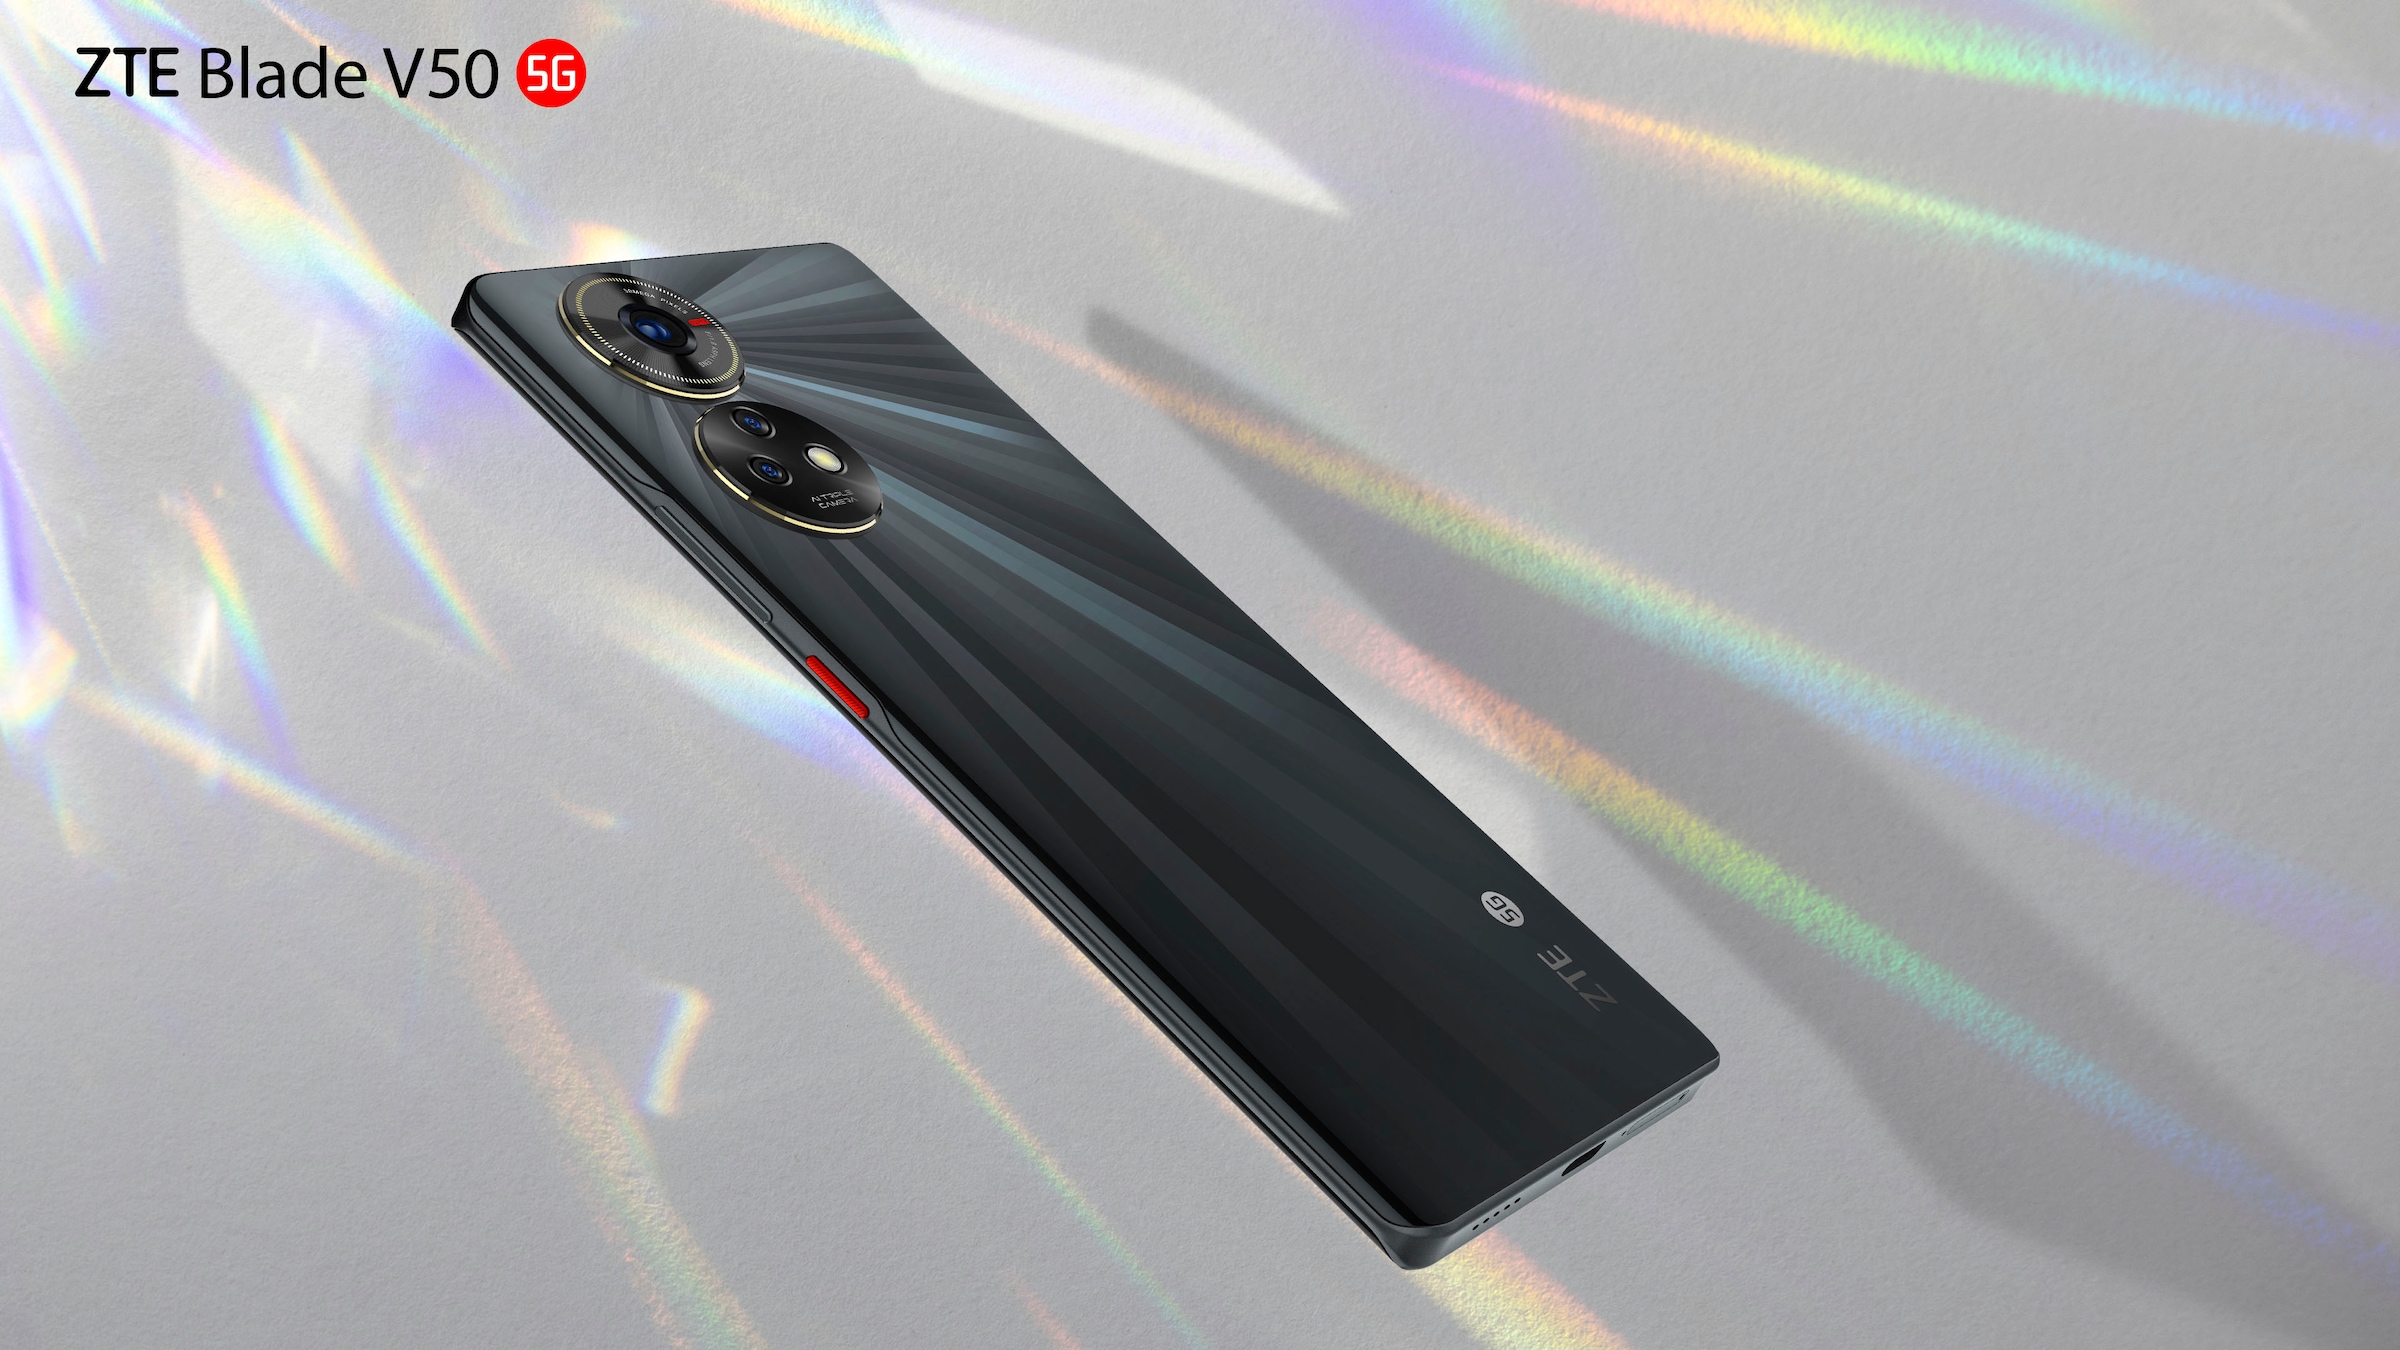 V50 Speicherplatz, schwarz, 50 »Blade ZTE Smartphone kaufen online 16,94 cm/6,67 GB 256 MP 5G«, Zoll, Kamera